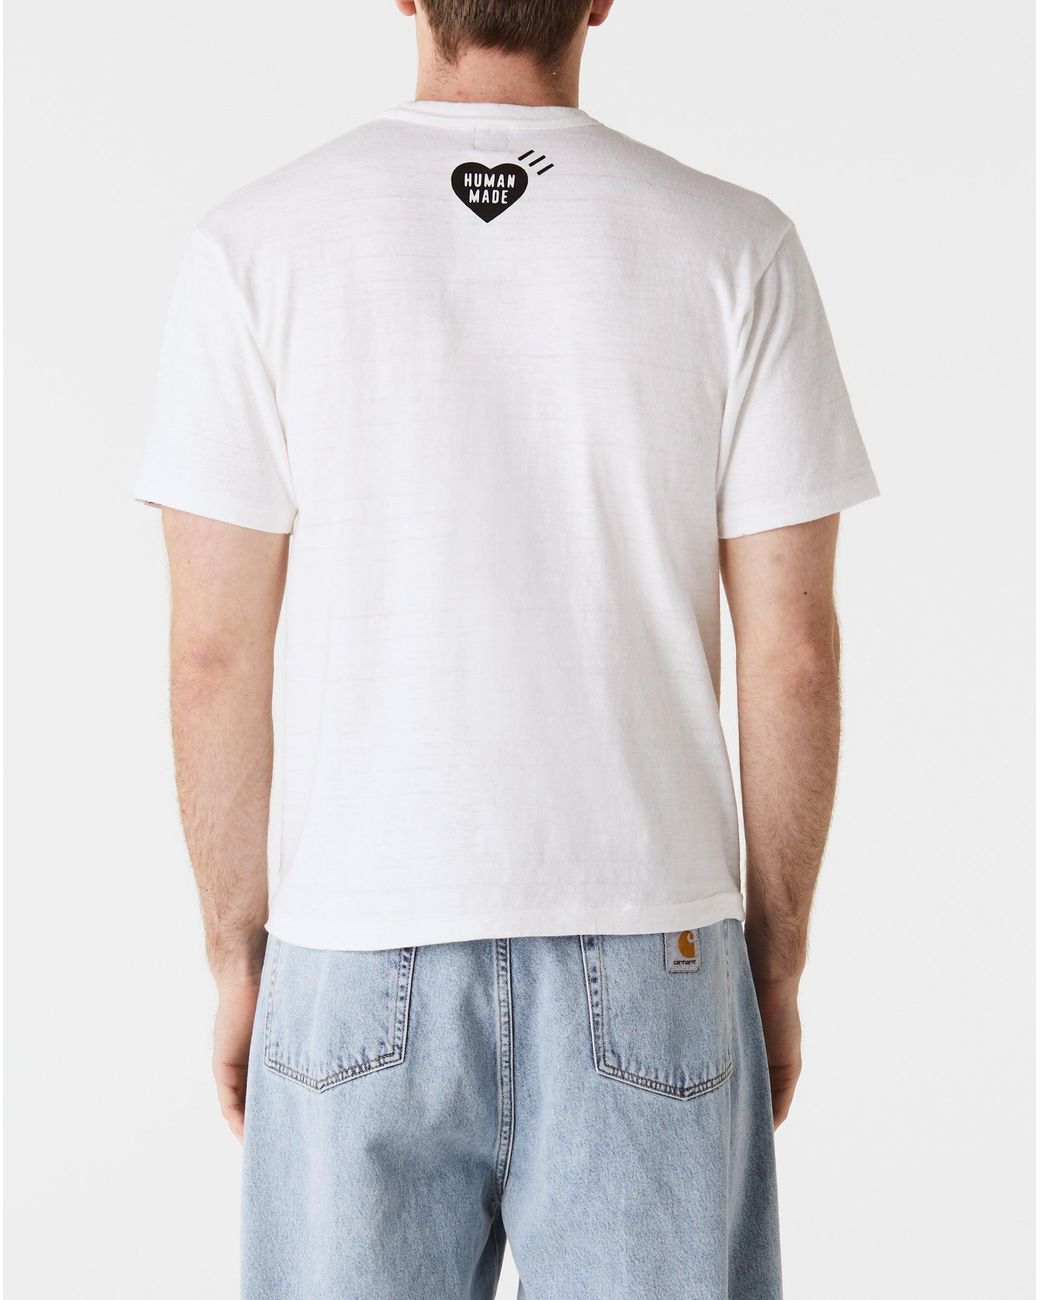 HUMAN MADE Graphic T Shirt #4 White